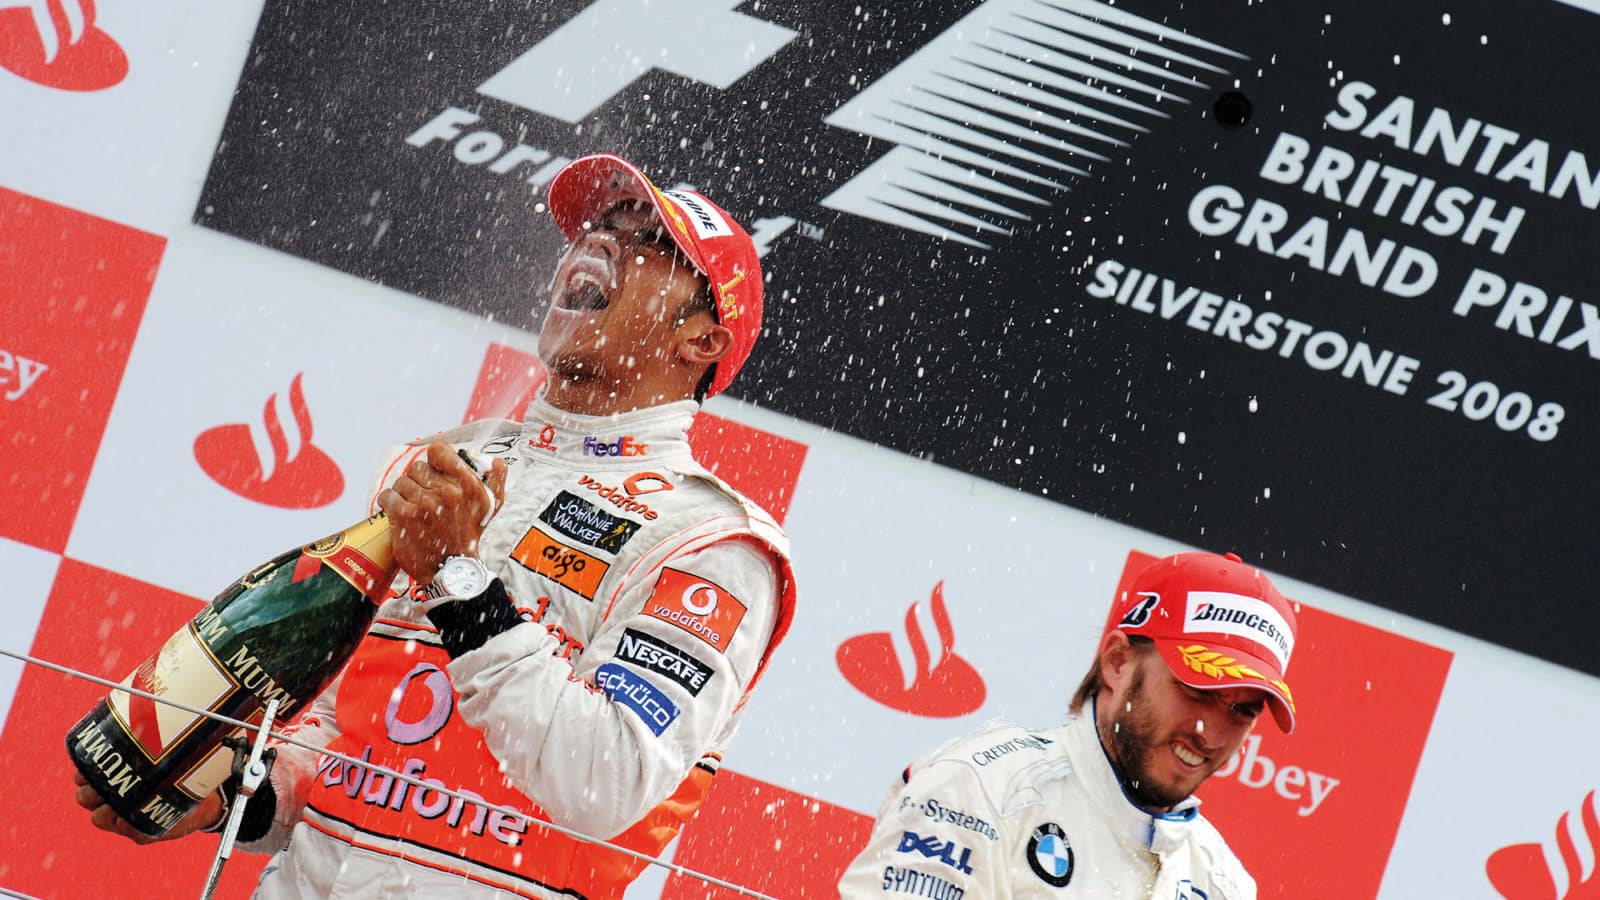 Lewis Hamilton 2008 British Grand Prix